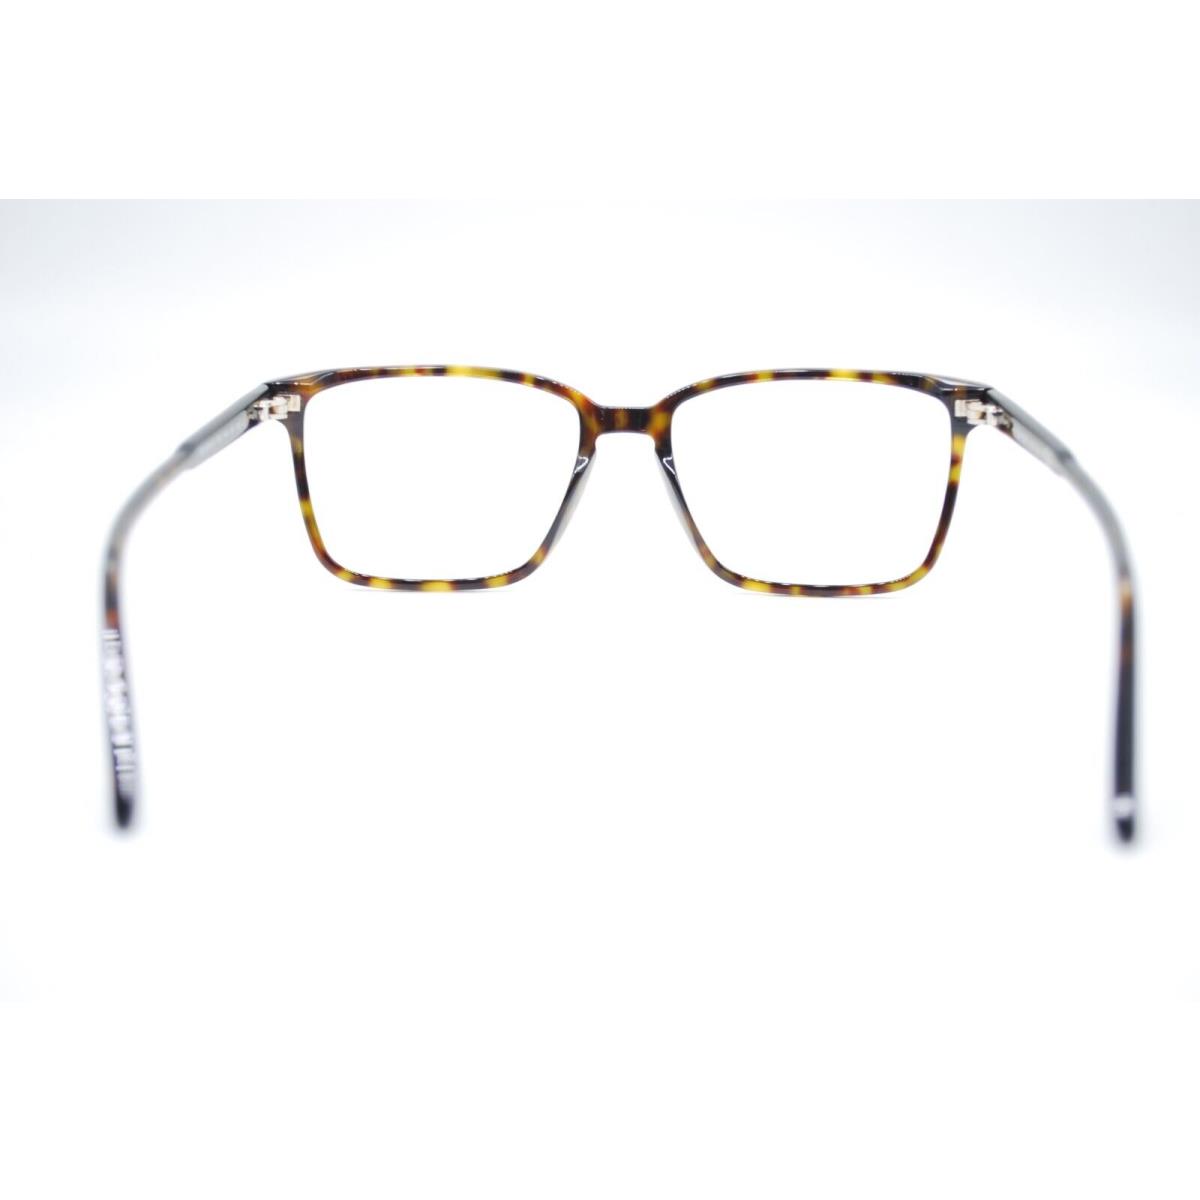 Tom Ford eyeglasses  - Frame: HAVANA 3